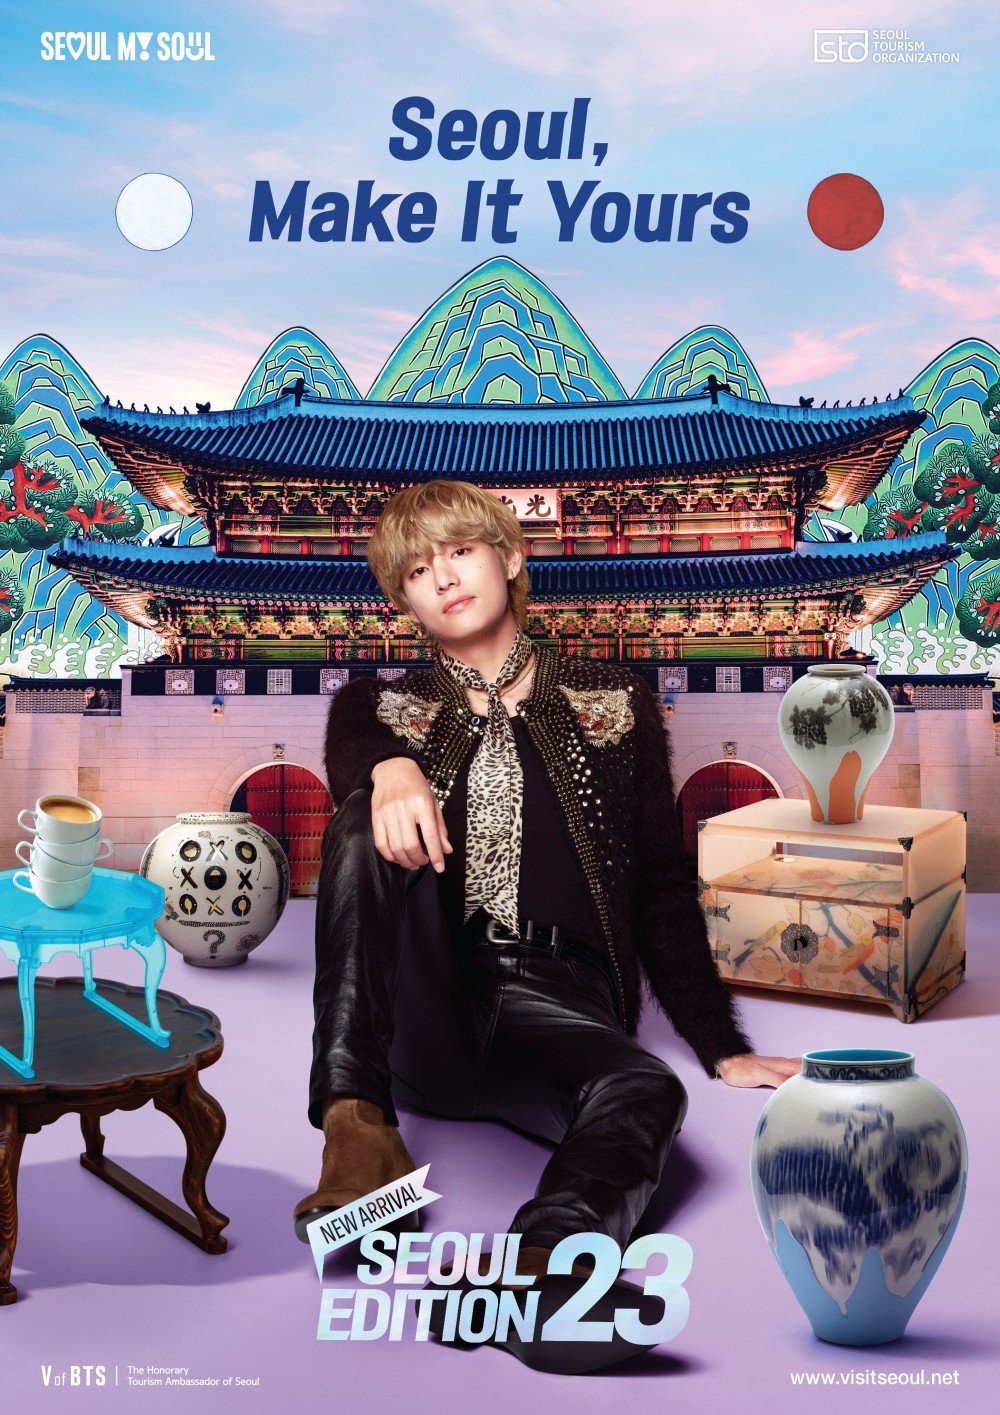 Рекламная кампания с Ви из BTS "Seoul Edition 23" в качестве почетного амбассадора по туризму достигла 500 млн просмотров за три недели